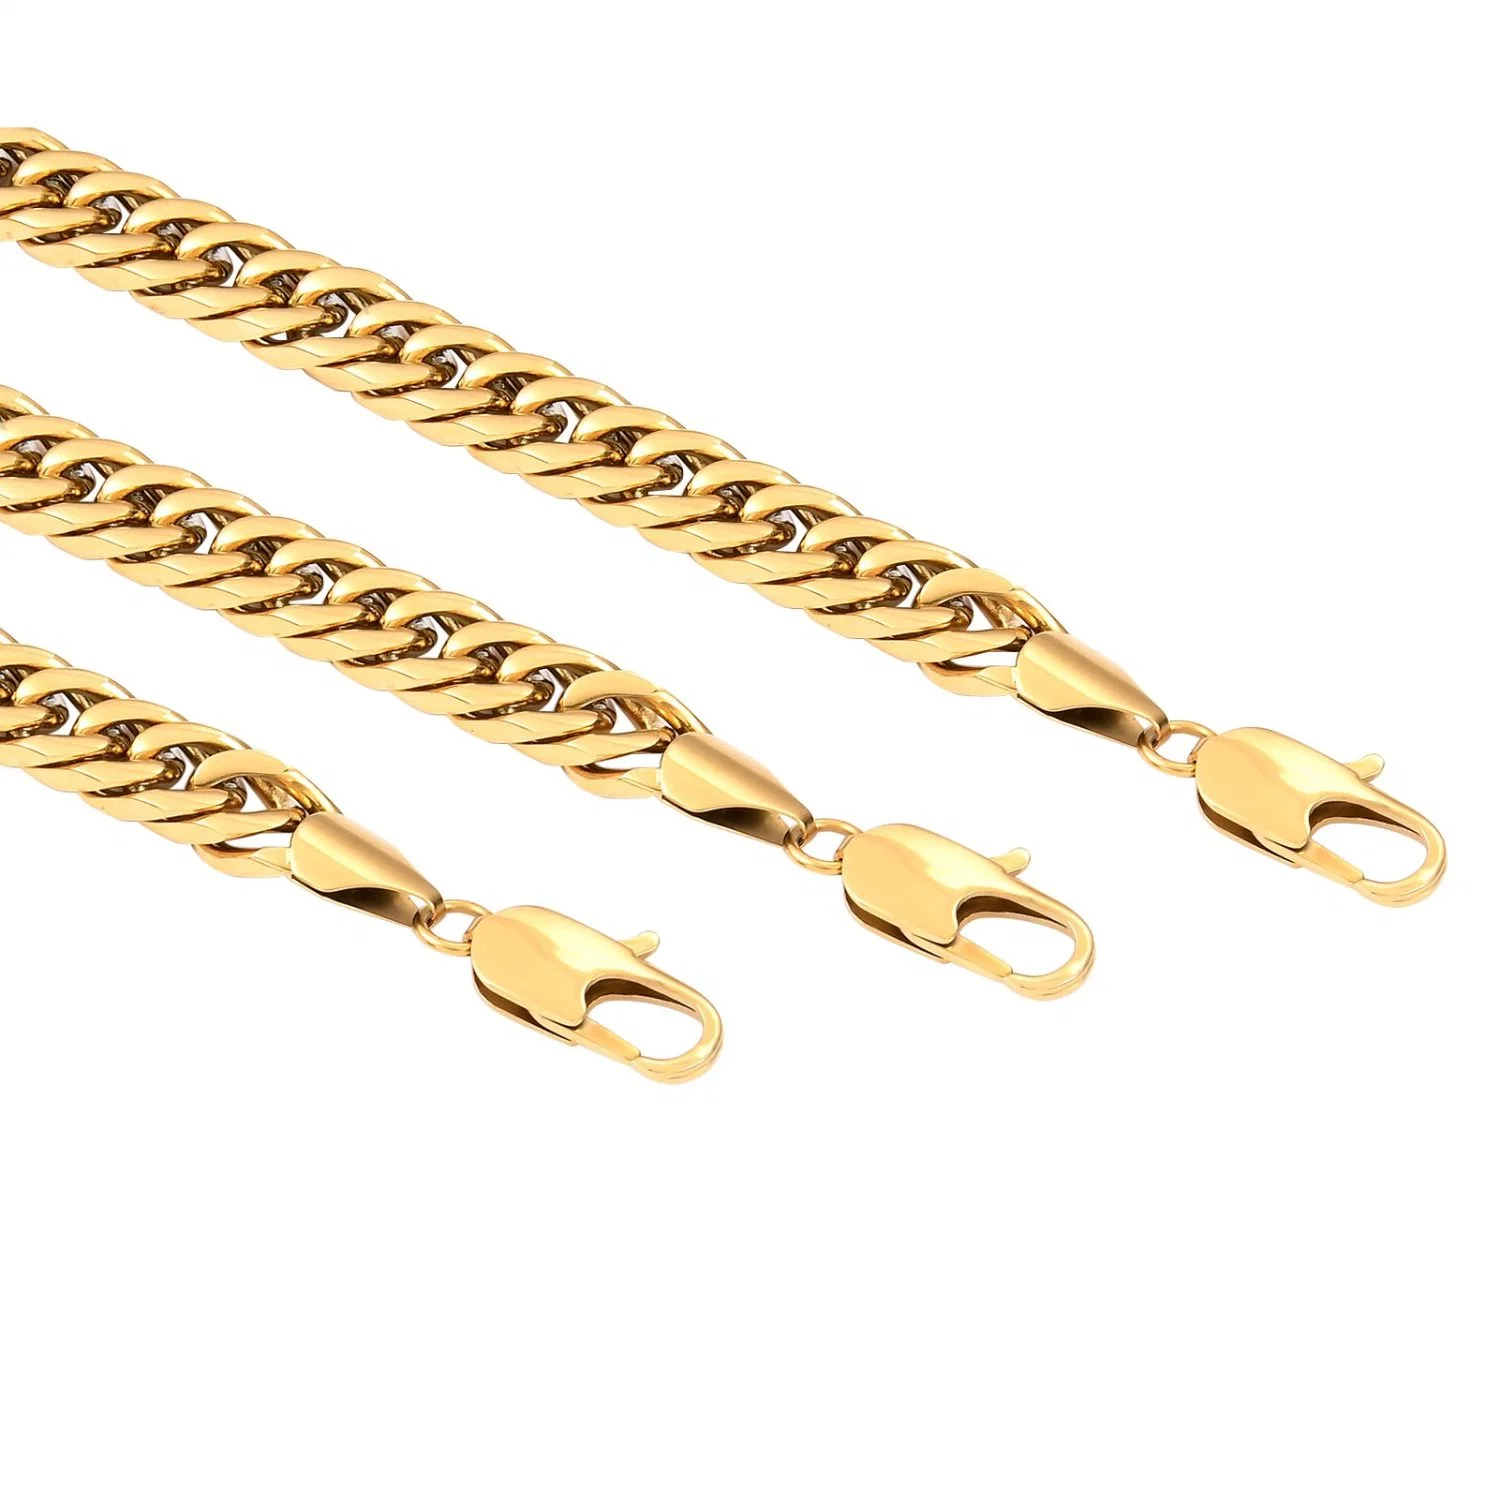 Chunky dick kubanischen Link Kette Halskette für Hip Hop Männer Lady Fashion Schmuck 14K vergoldet